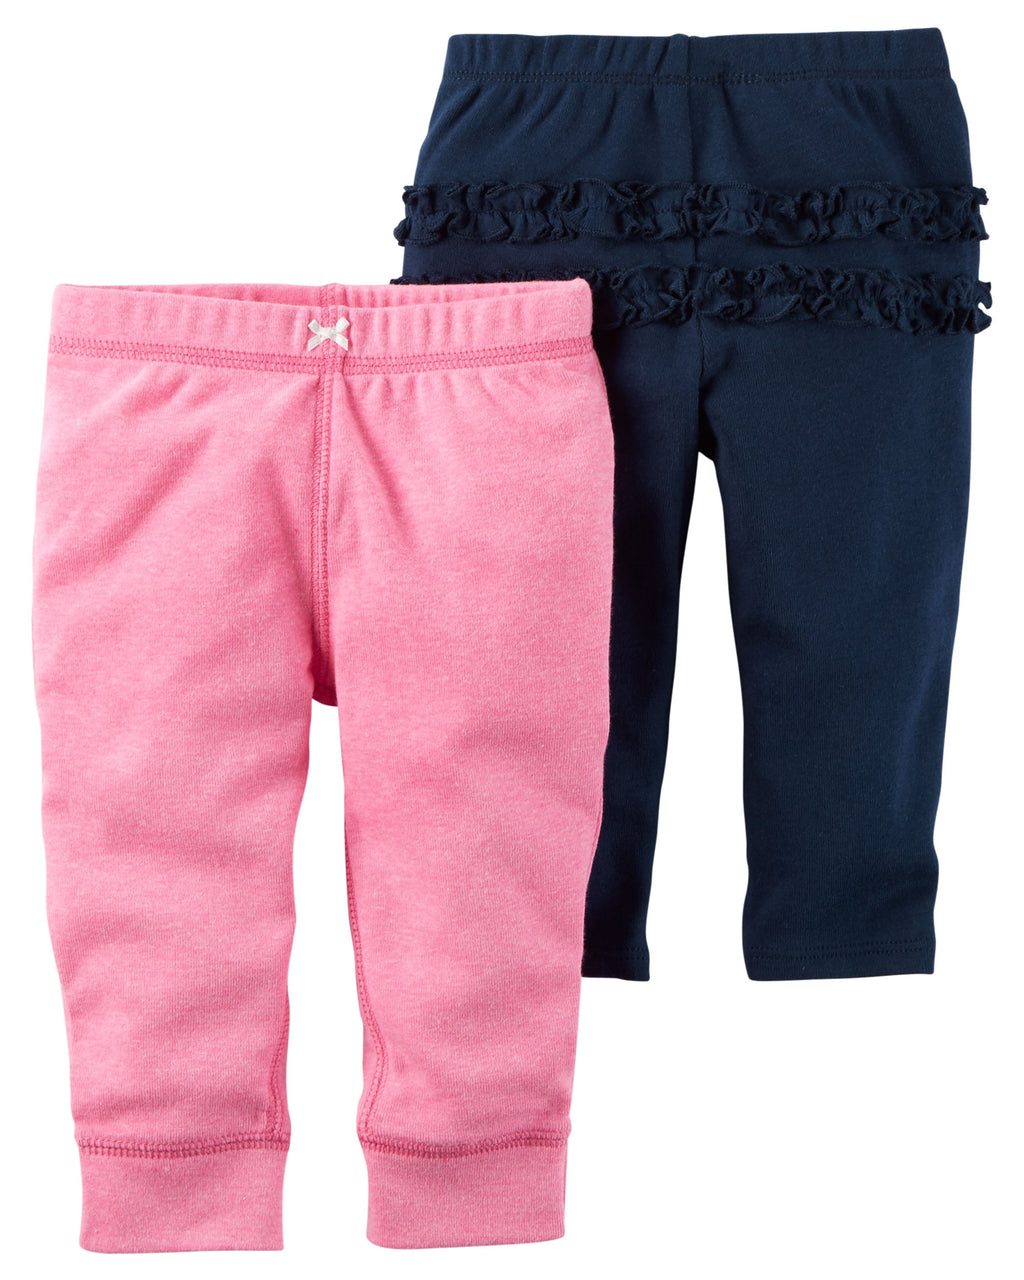 Pack de pantalones CARTERS 2-Pack Babysoft Neon Pants